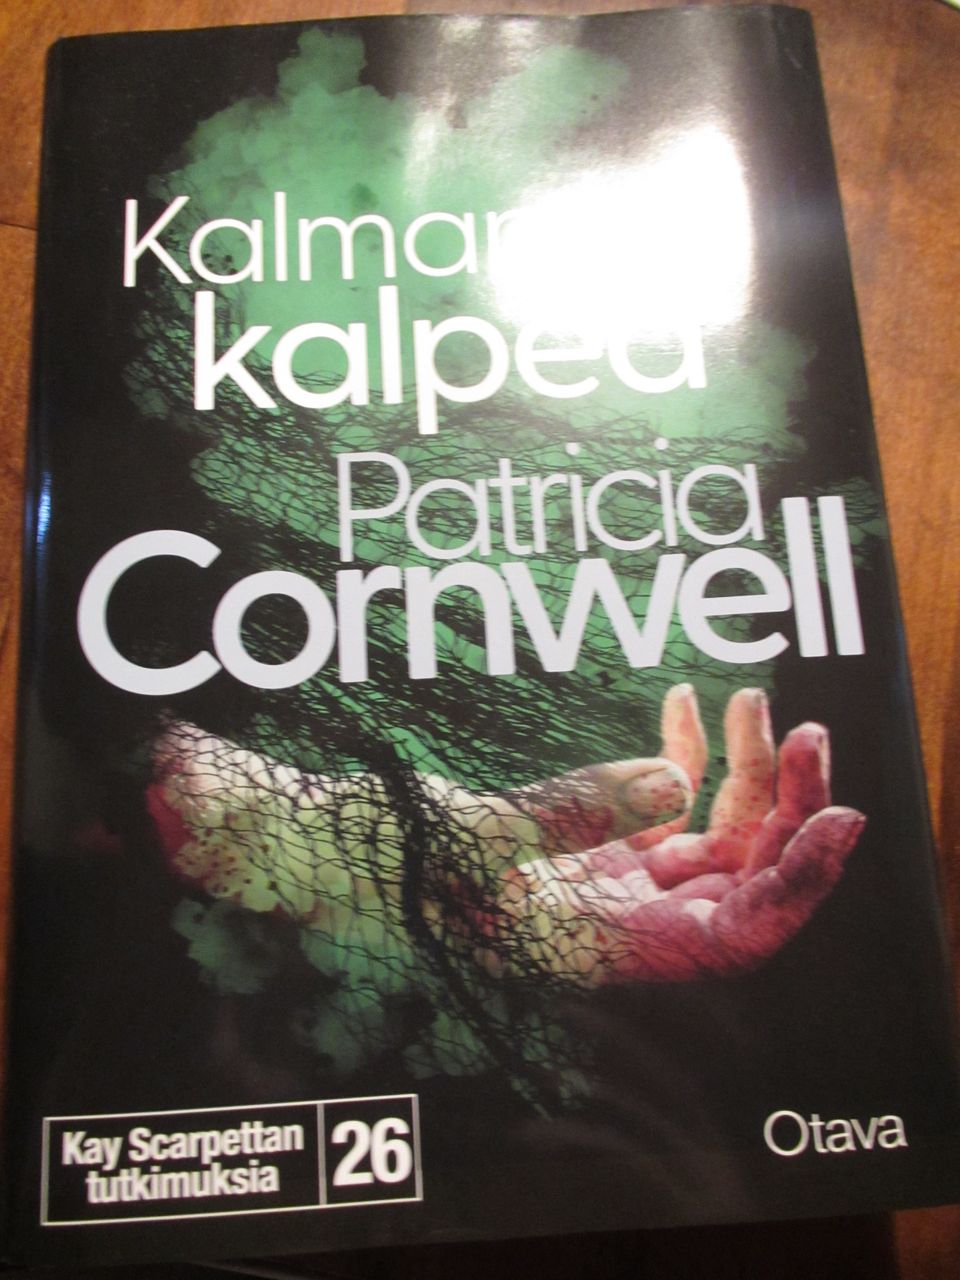 Patricia Cornwell Kalman kalpea